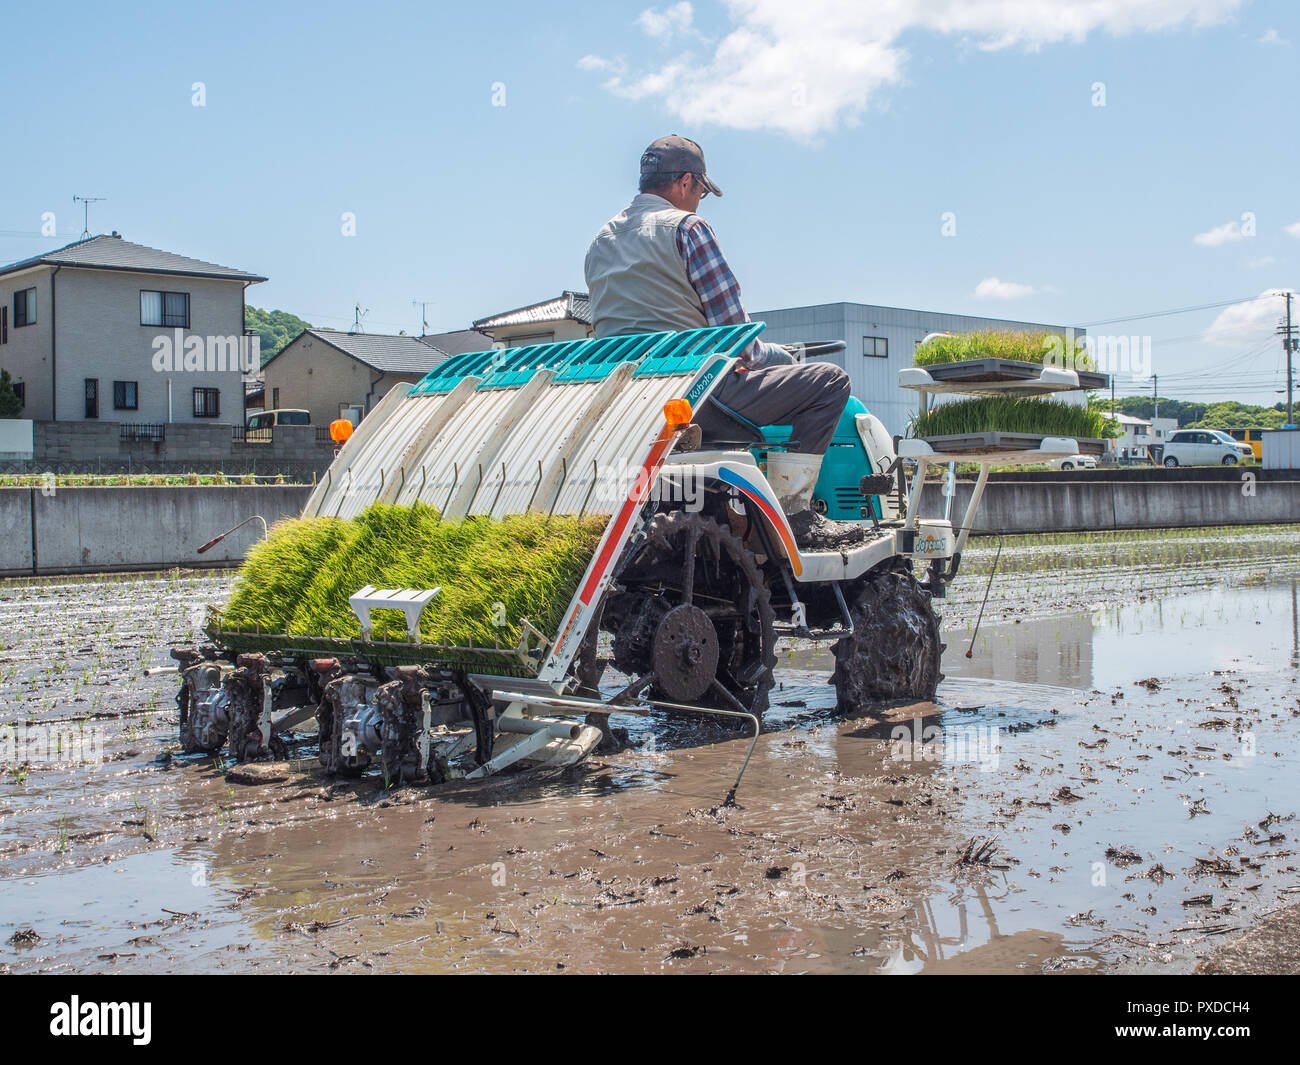 Riz d'exploitation des agriculteurs, la machine du semoir avec bacs de plants de riz, rizières inondées, près de maisons, Takamatsu, Kagawa, Japon Banque D'Images